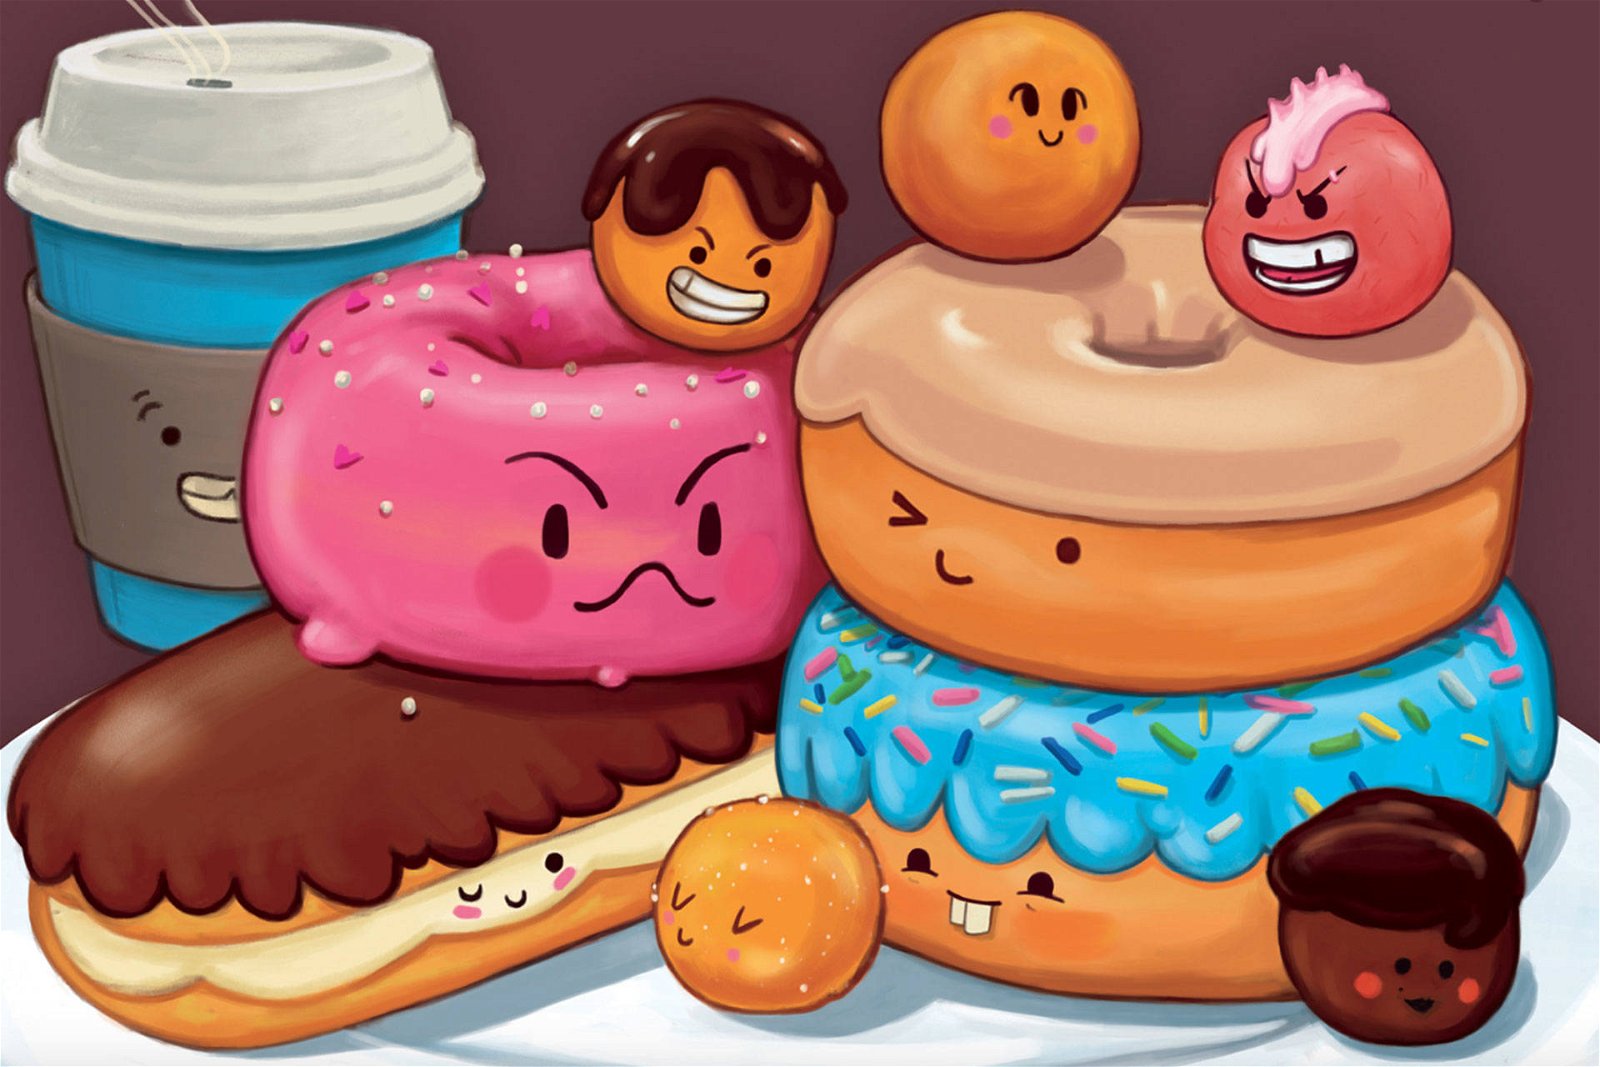 Immagine di Recensione: Go Nuts for Donuts, sfide a colpi di ciambella!